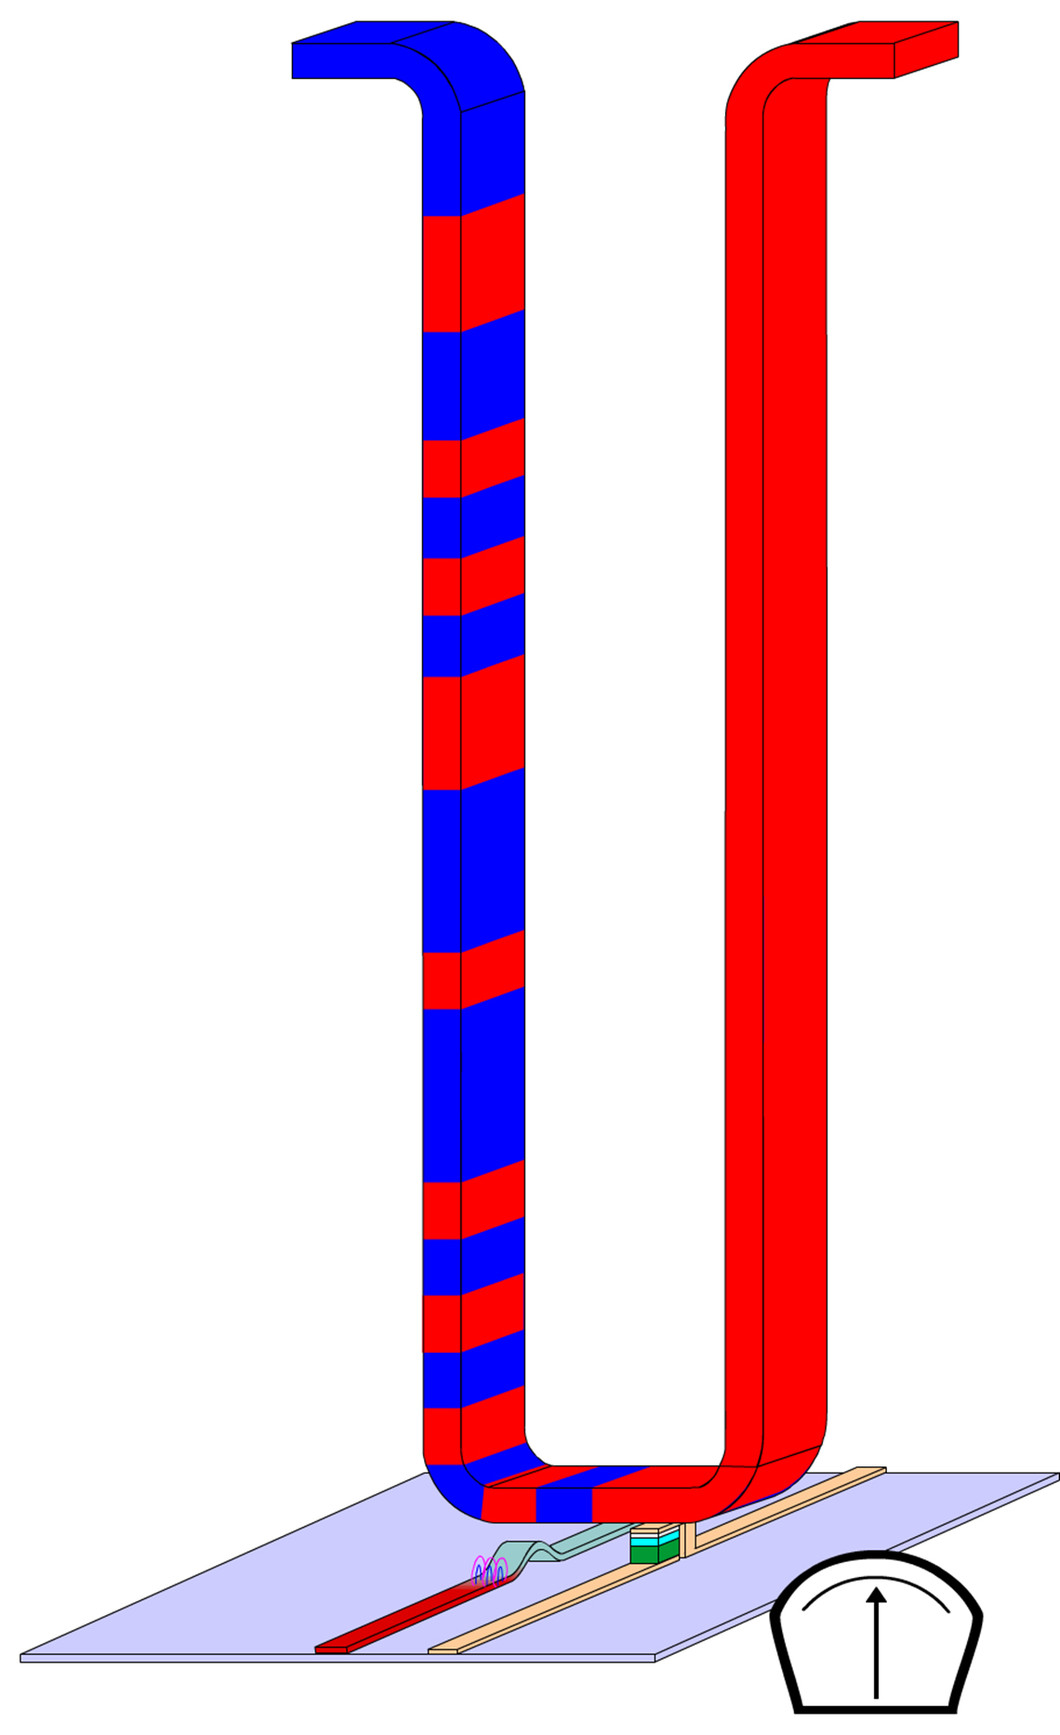 L'information est stockée sous forme de bits dans le nanofil du Racetrack (domaines rouges : 0, bleus : 1). À l'extrémité inférieure du fil, on trouve à gauche l'élément d'écriture et à droite l'élément de lecture. Une champ magnétique entraîne les bits à travers le fil à une vitesse de 2 000 mètres par seconde (source : IBM)